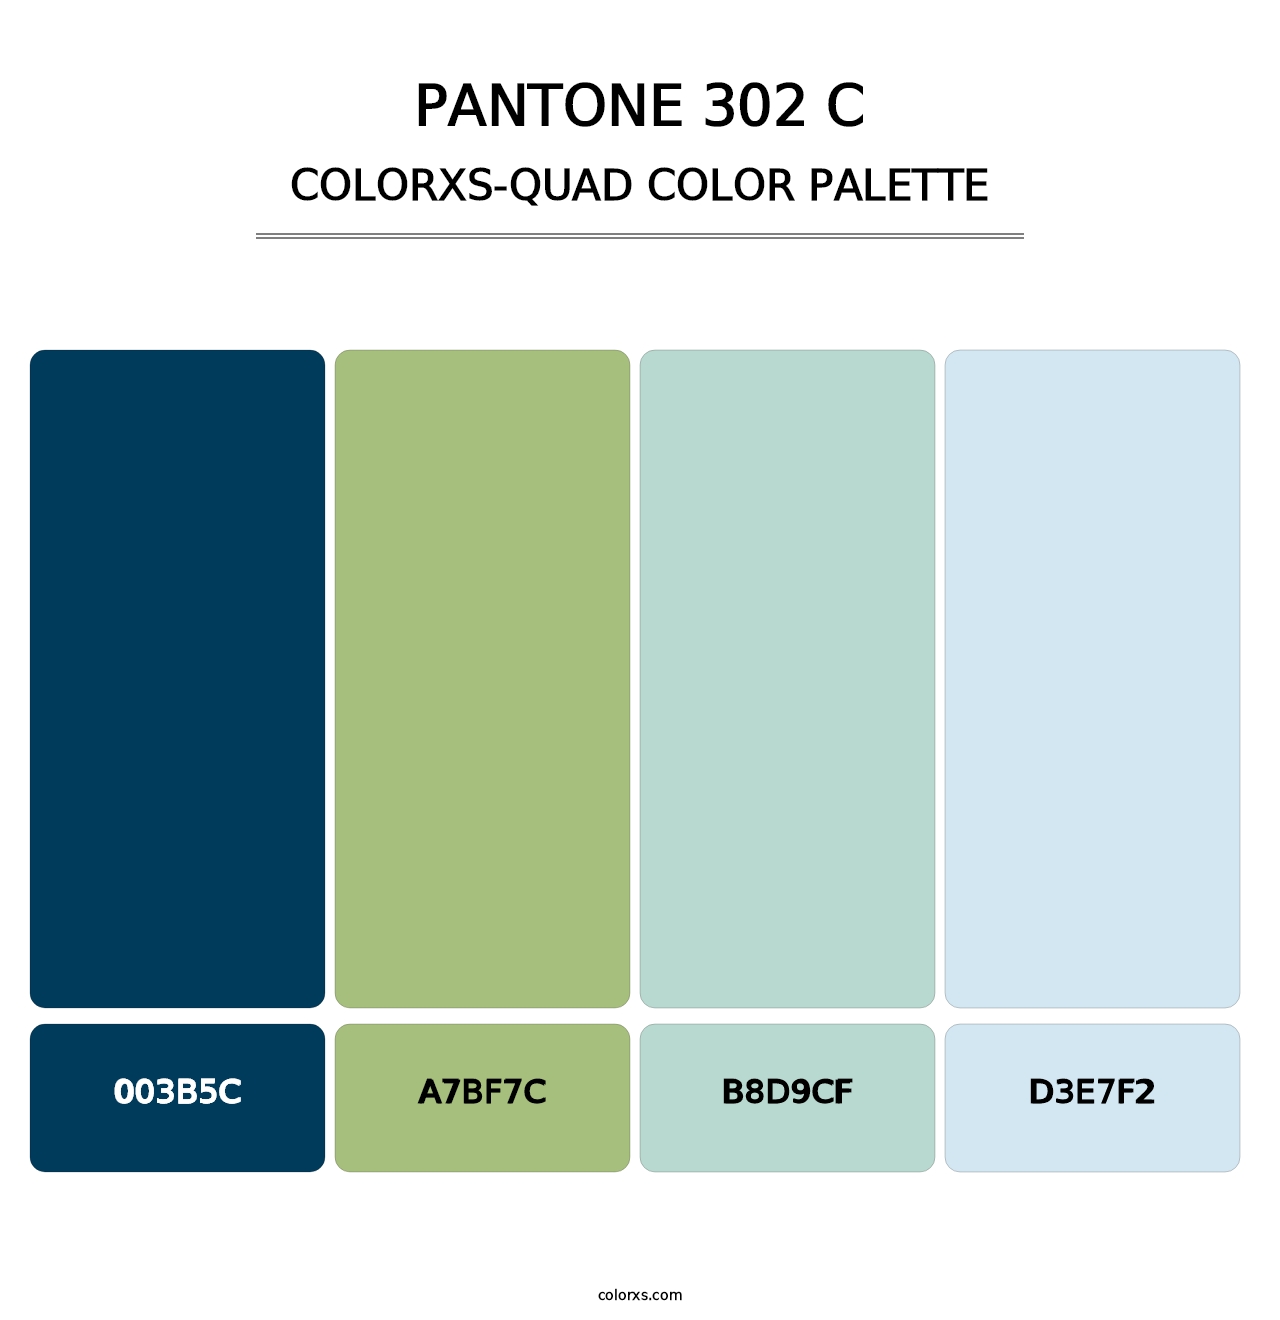 PANTONE 302 C - Colorxs Quad Palette